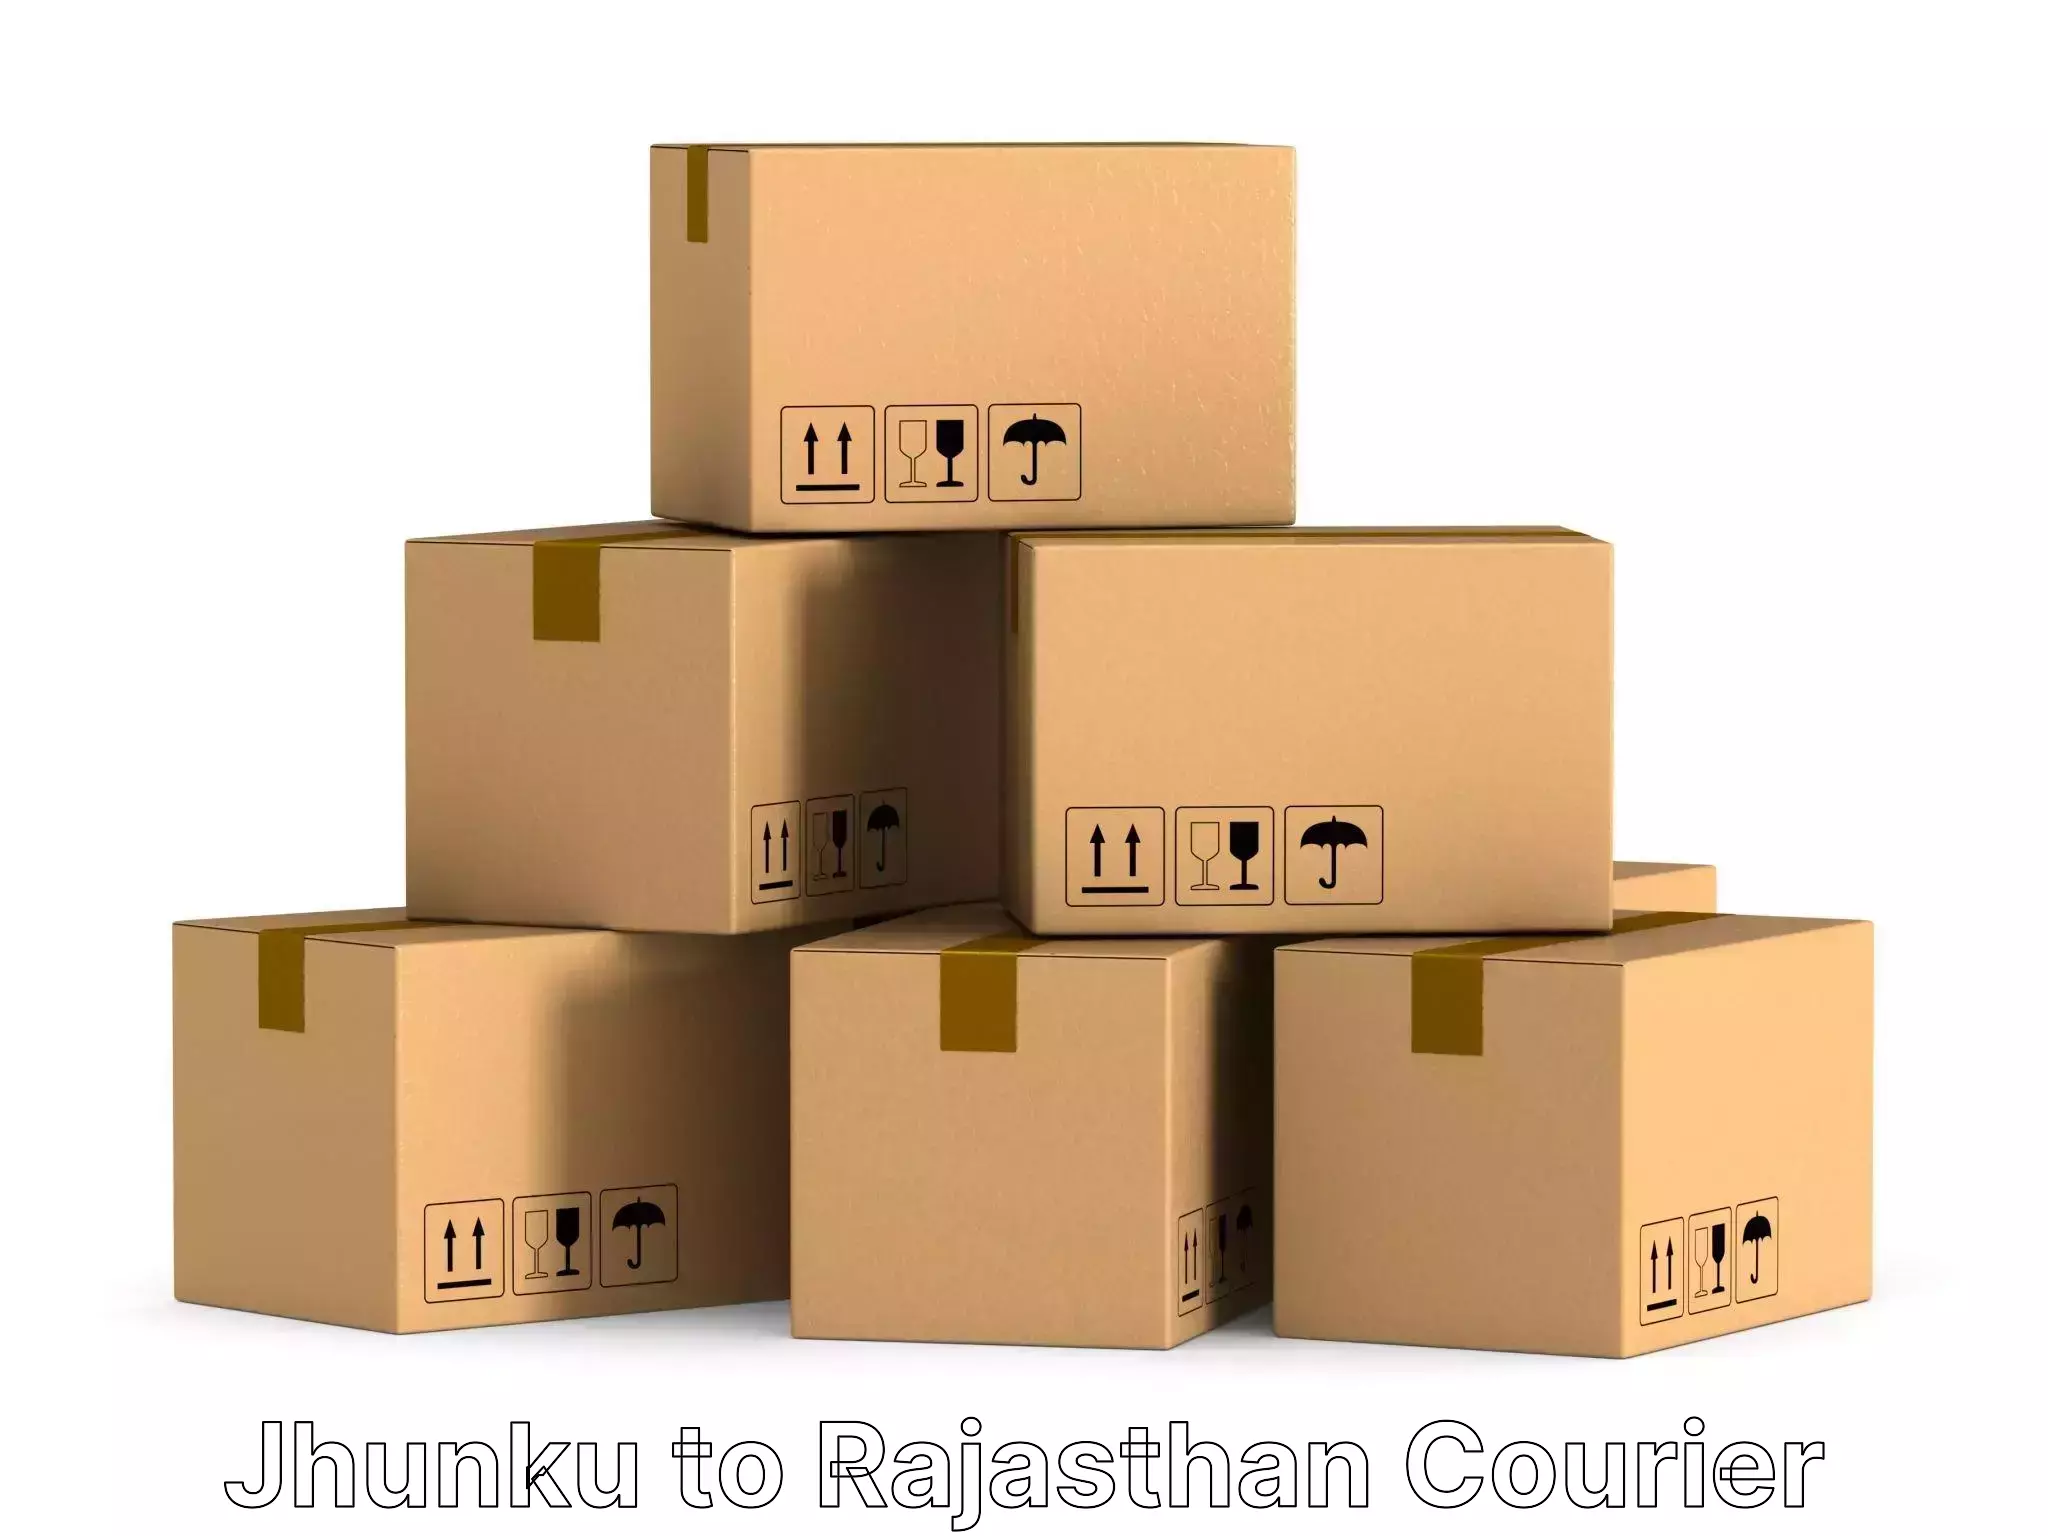 Furniture moving experts Jhunku to Bhilwara